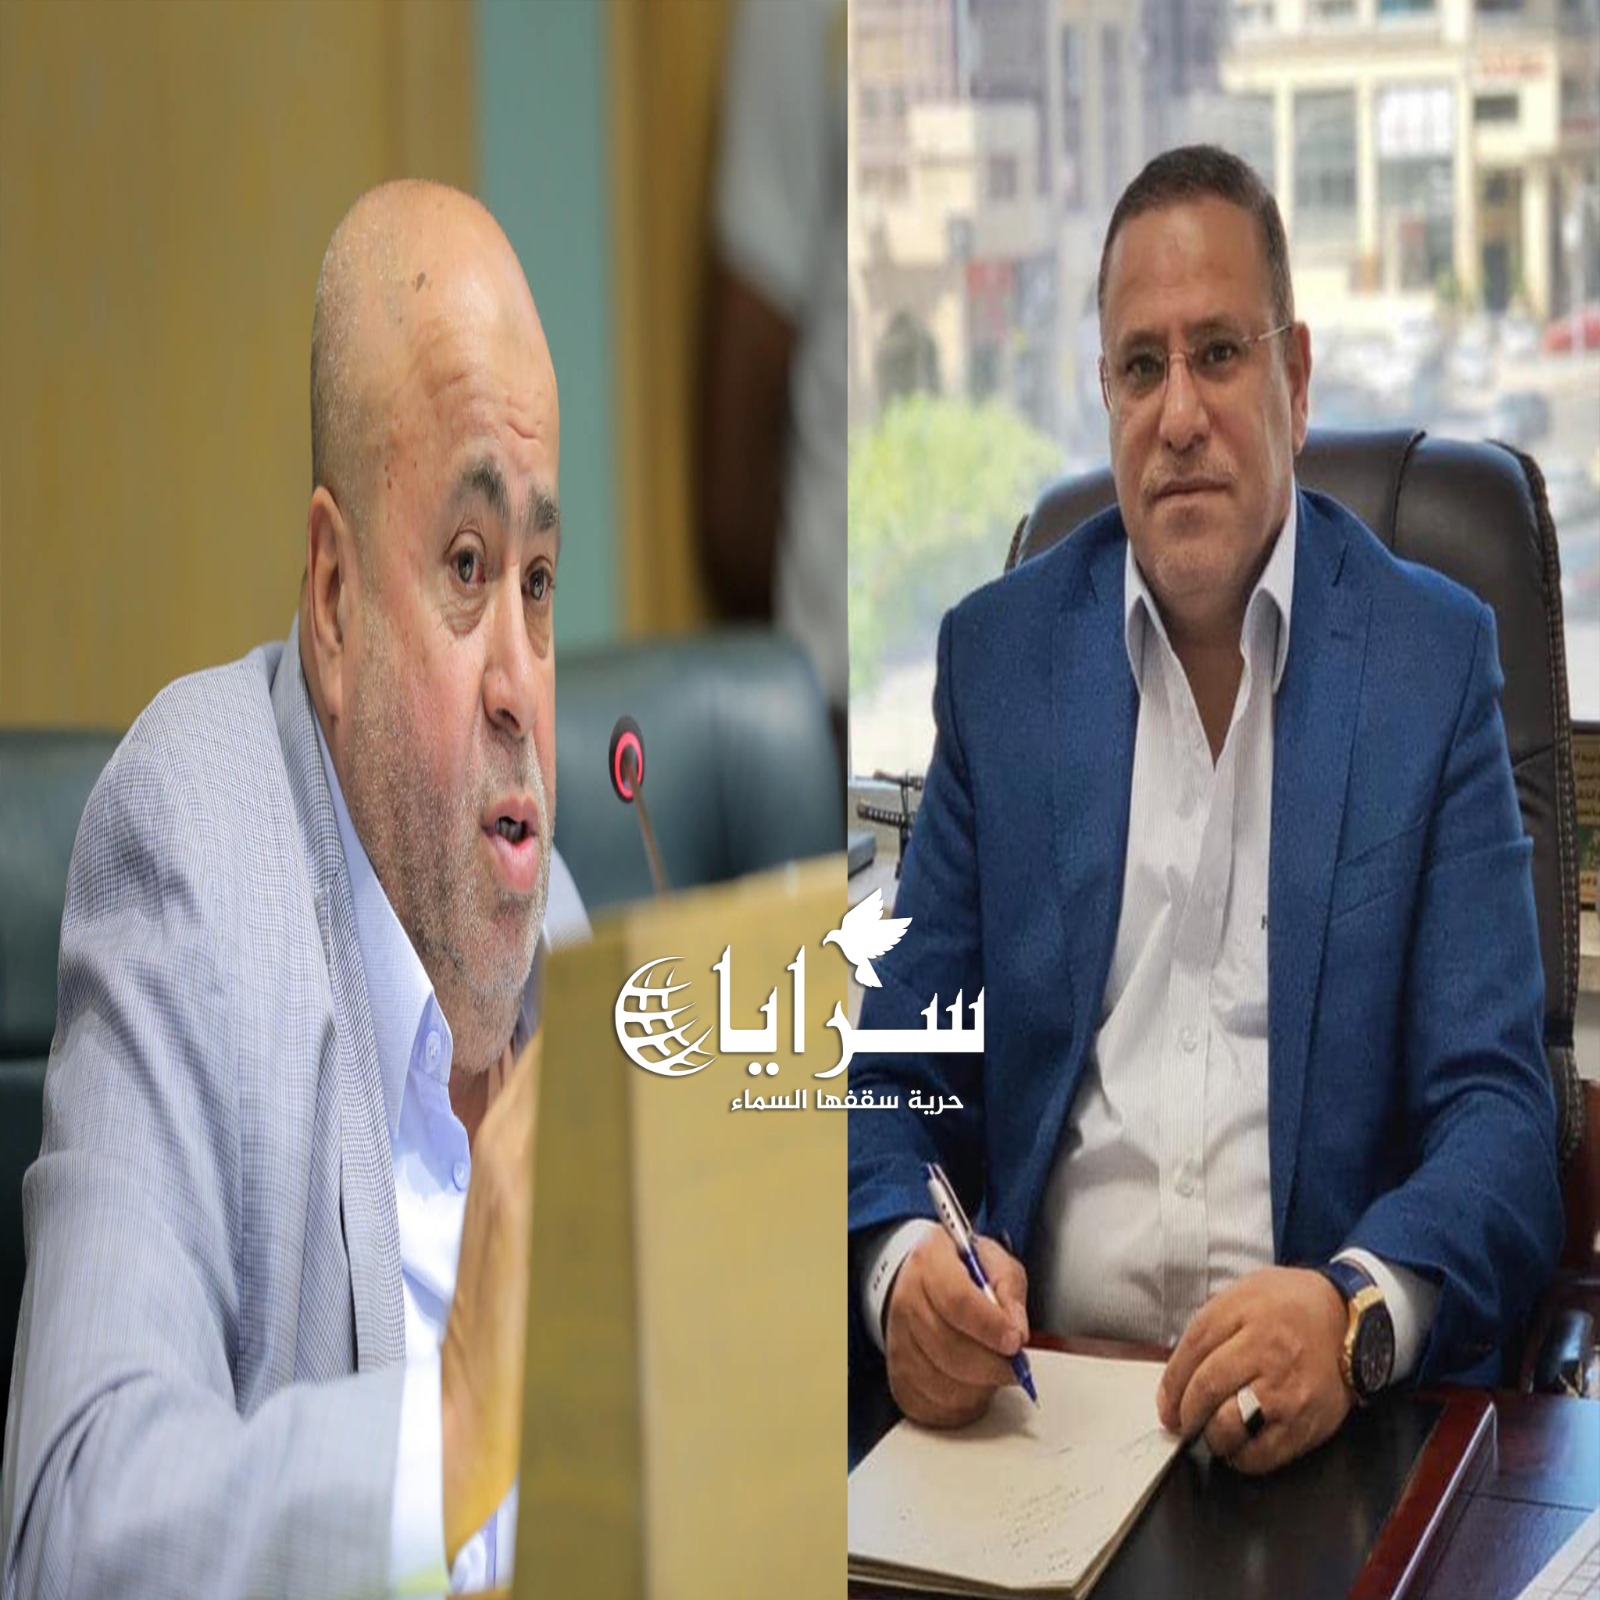 النائب خليل عطية يسأل الحكومة عن محاولة توقيف الزميل هاشم الخالدي في المطار بسبب قضية مالية 